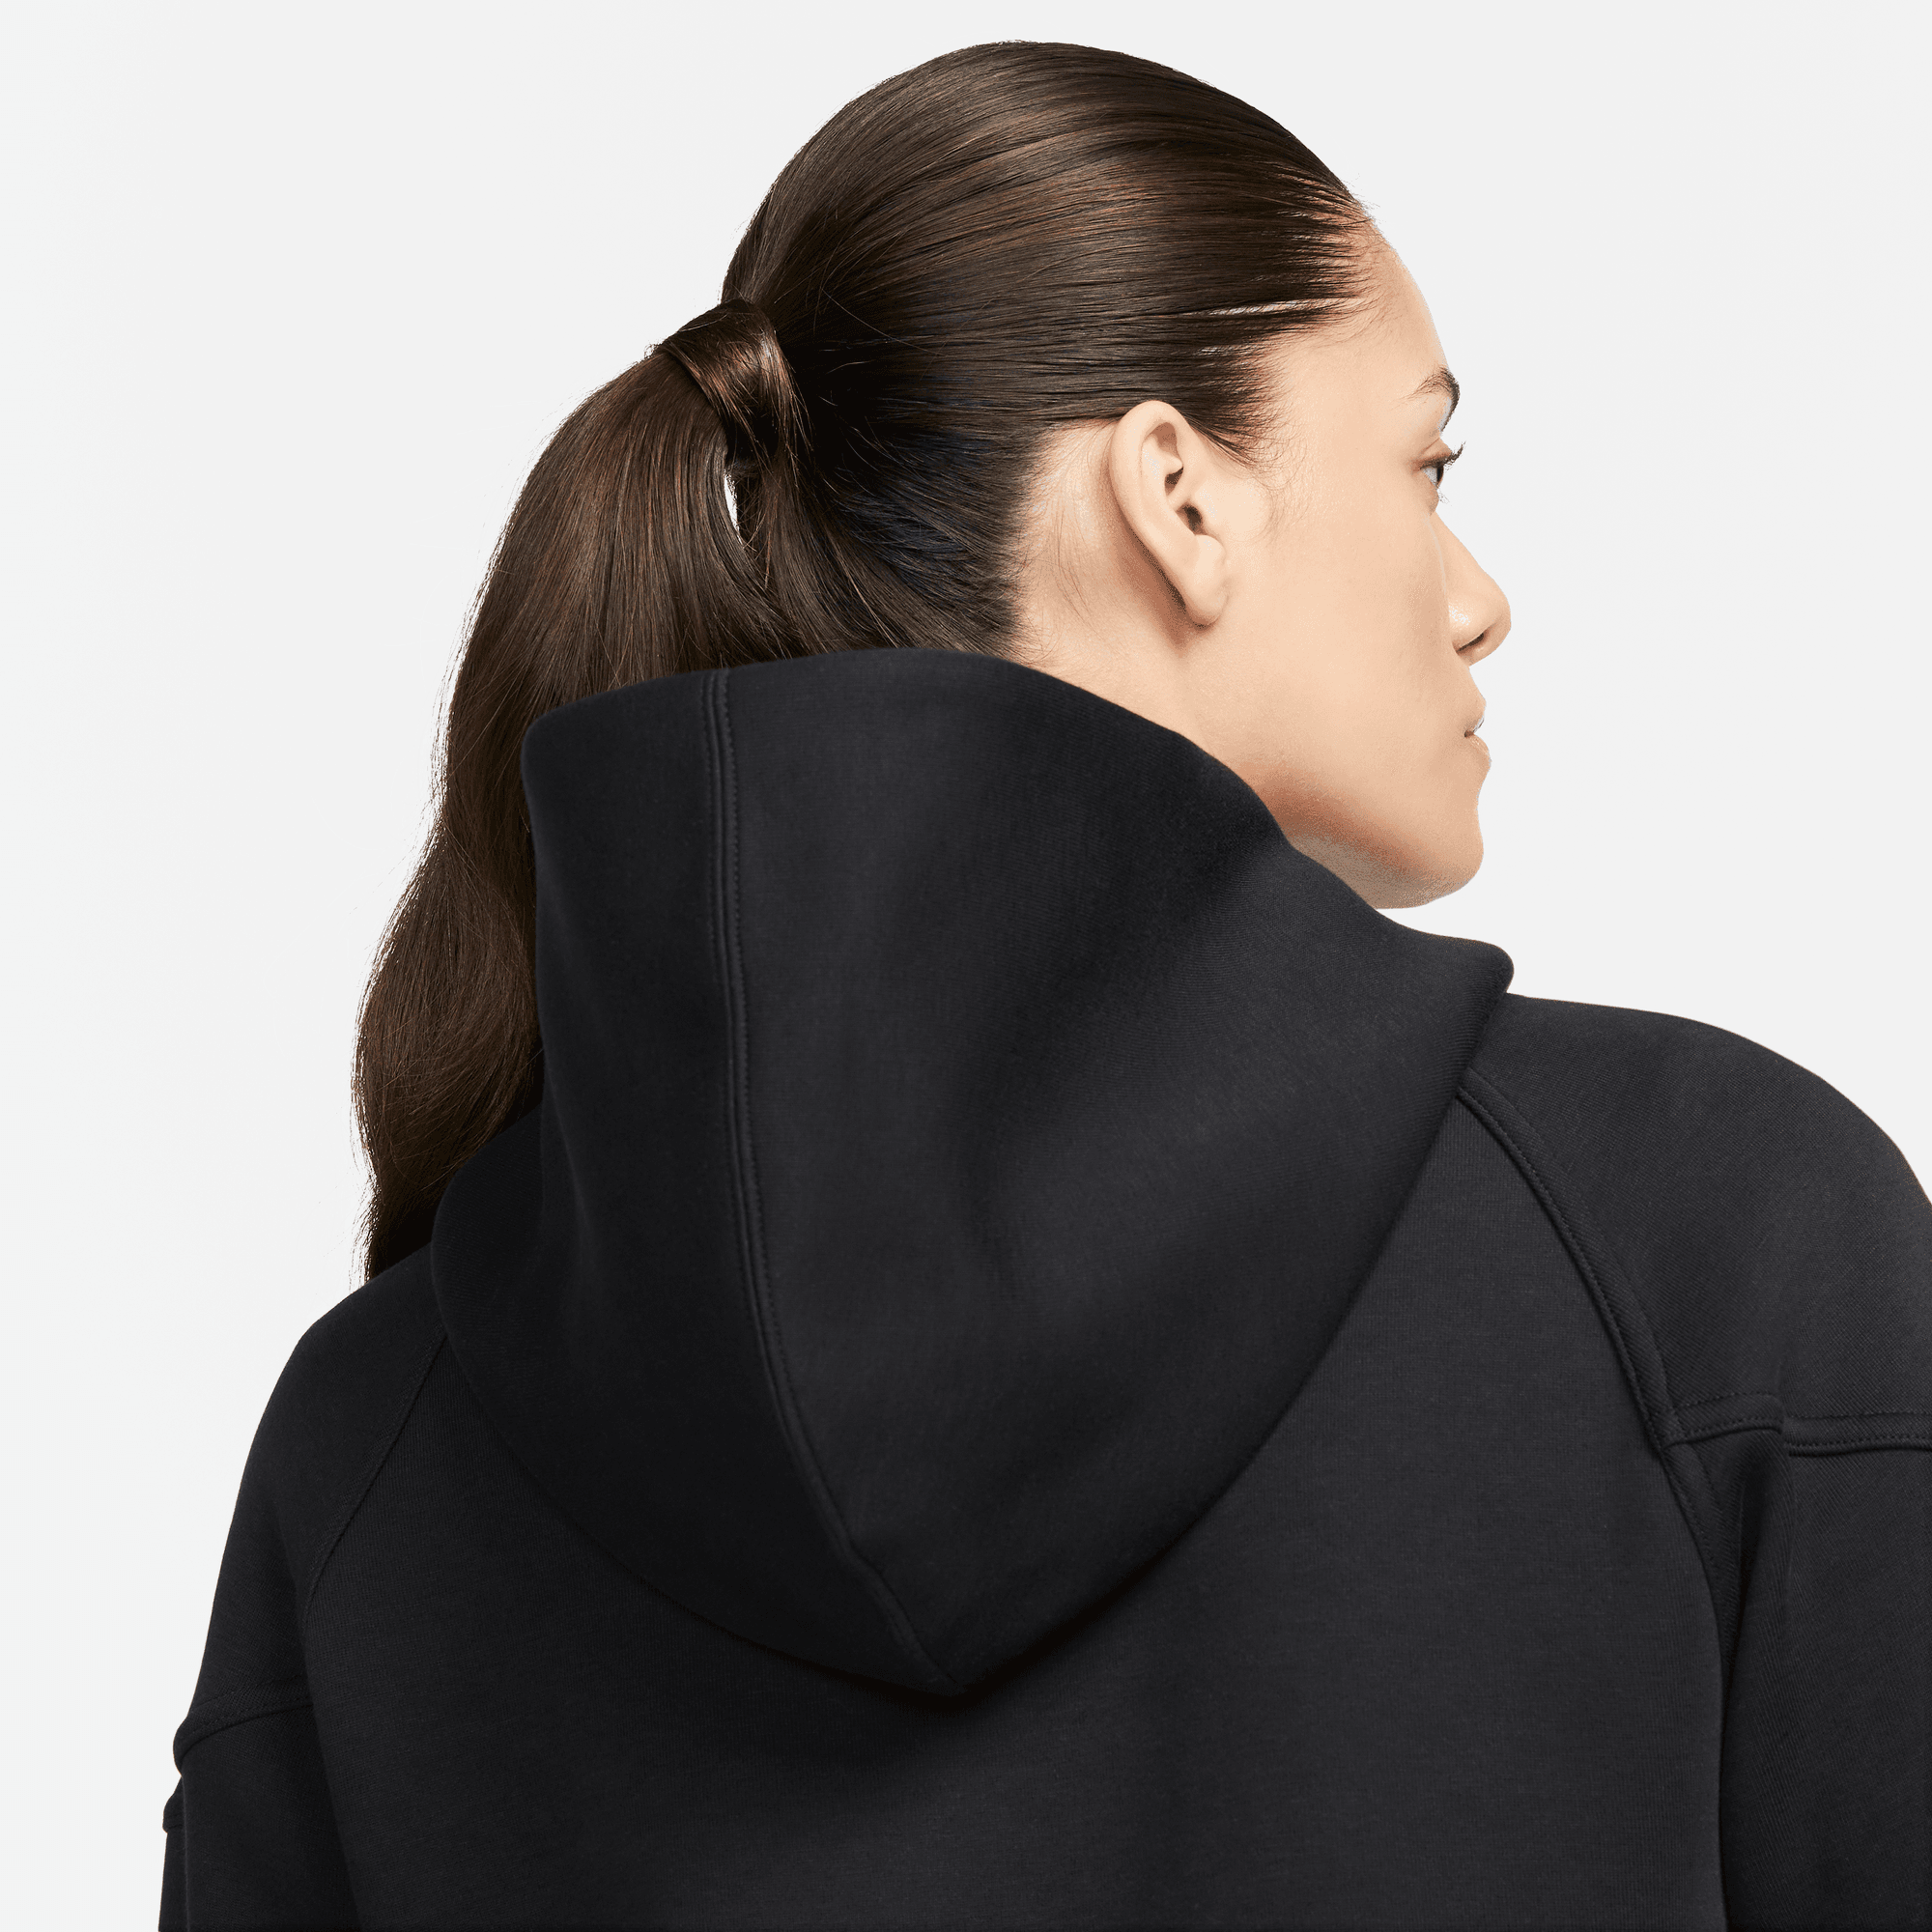 Nike Sportswear Tech Fleece Windrunner Women's Black Full-Zip Hoodie